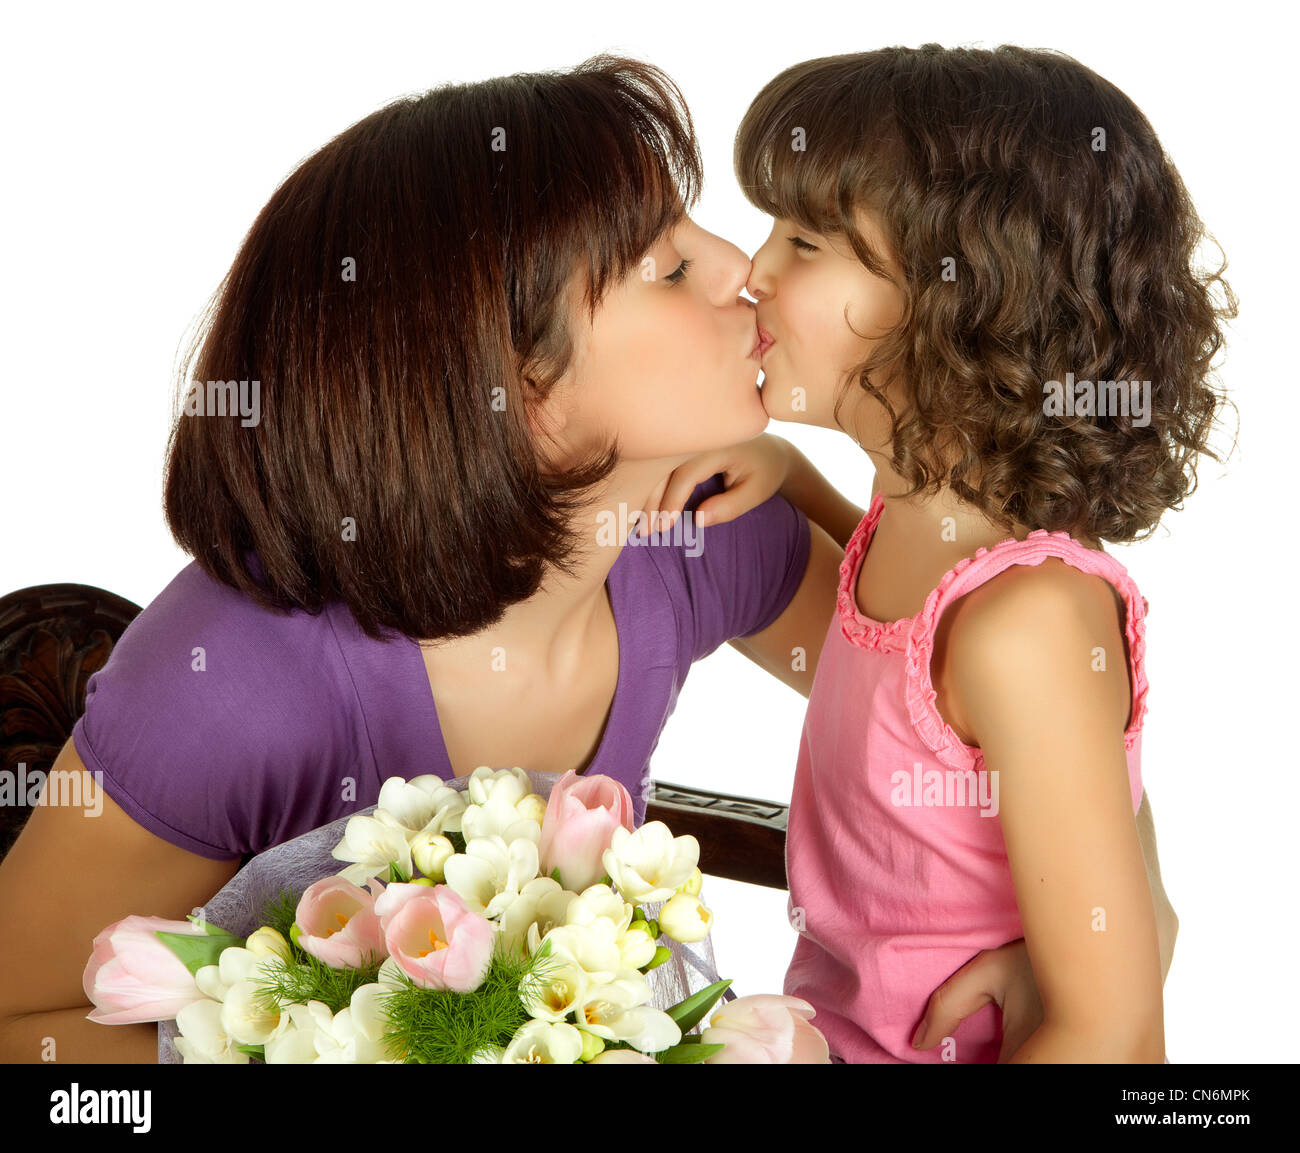 Мама сильно возбудила. Мама целует дочь. Поцелуй мамы. Мать с дочкой поцелуй. Мама с дочкой лесбиянят.